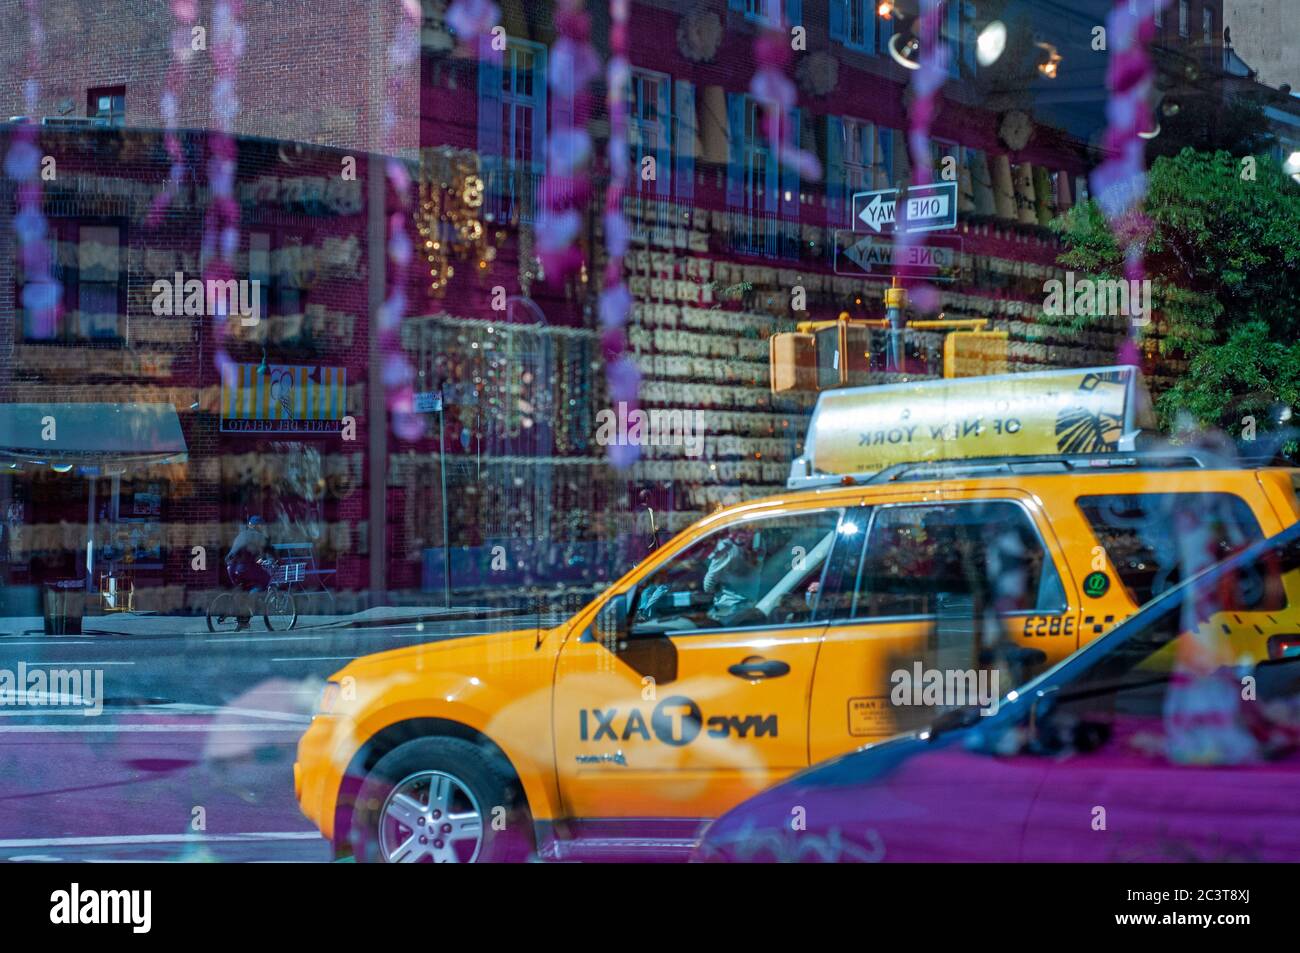 Reflejo de un taxi en una joyería en Greenwich Village, Manhattan, Nueva York, EE.UU. Greenwich Village, o simplemente el Village, es un barrio i Foto de stock